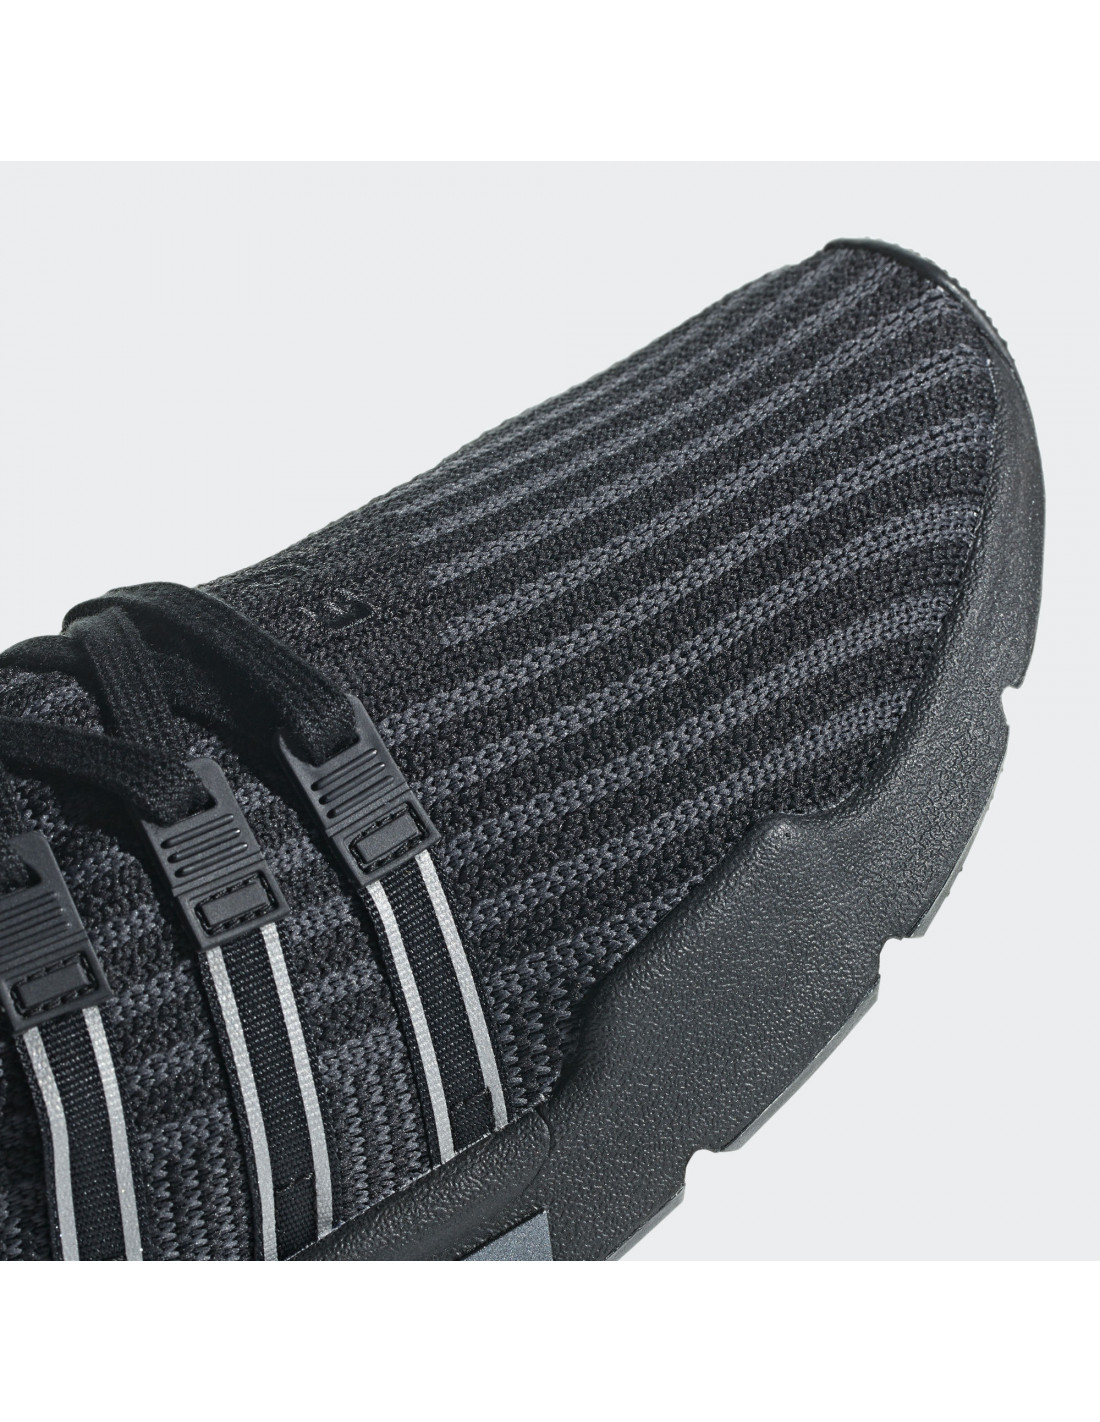 mordedura lo hizo Deportista Zapatillas adidas Originals EQT Support Mid ADV Primeknit Color Negro  Tallas calzado adidas Originals 40 2/3